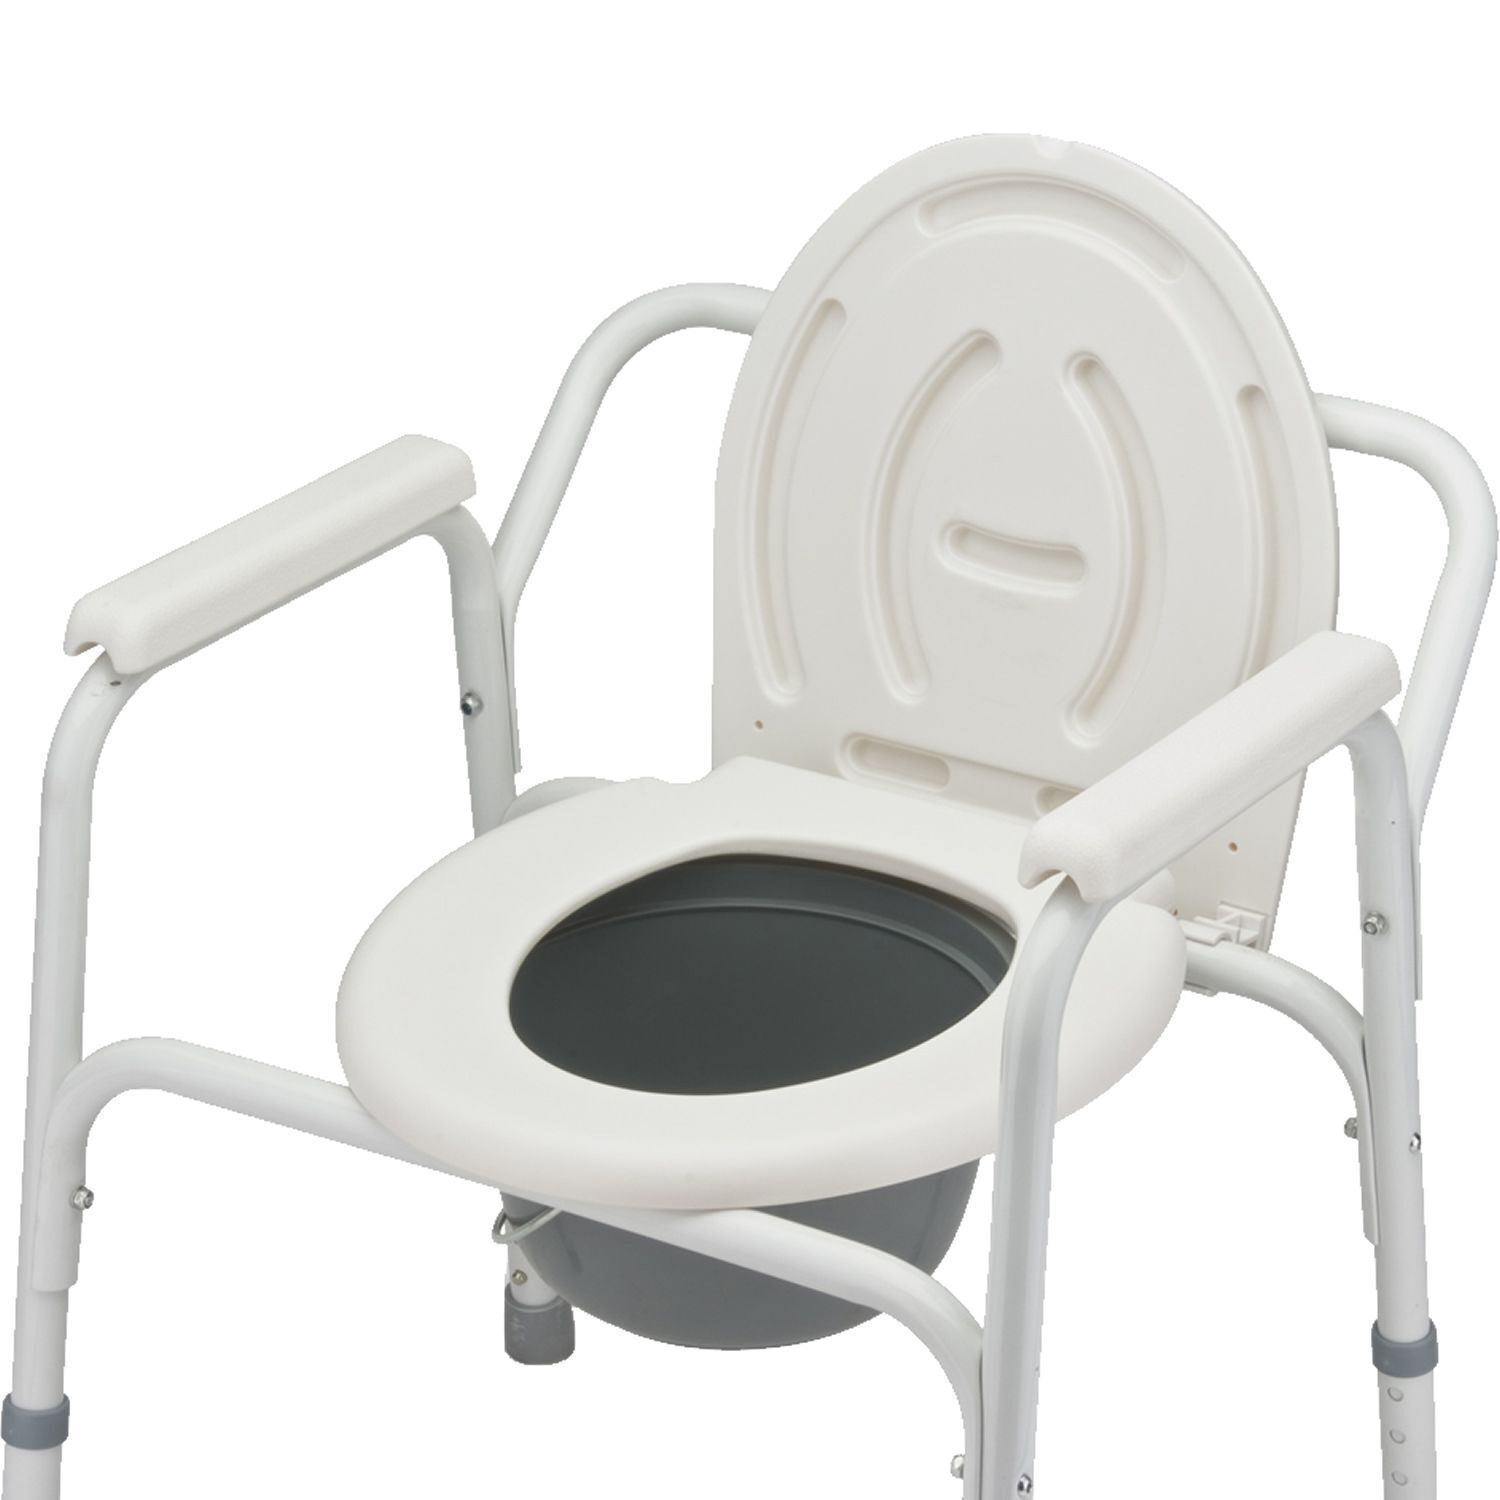 Туалет для инвалидов цена. Кресло-туалет Армед fs810. Кресло туалет Армед 810. Кресло Армед фс810 с санитарным оснащением. Кресло стул Армед fs810.